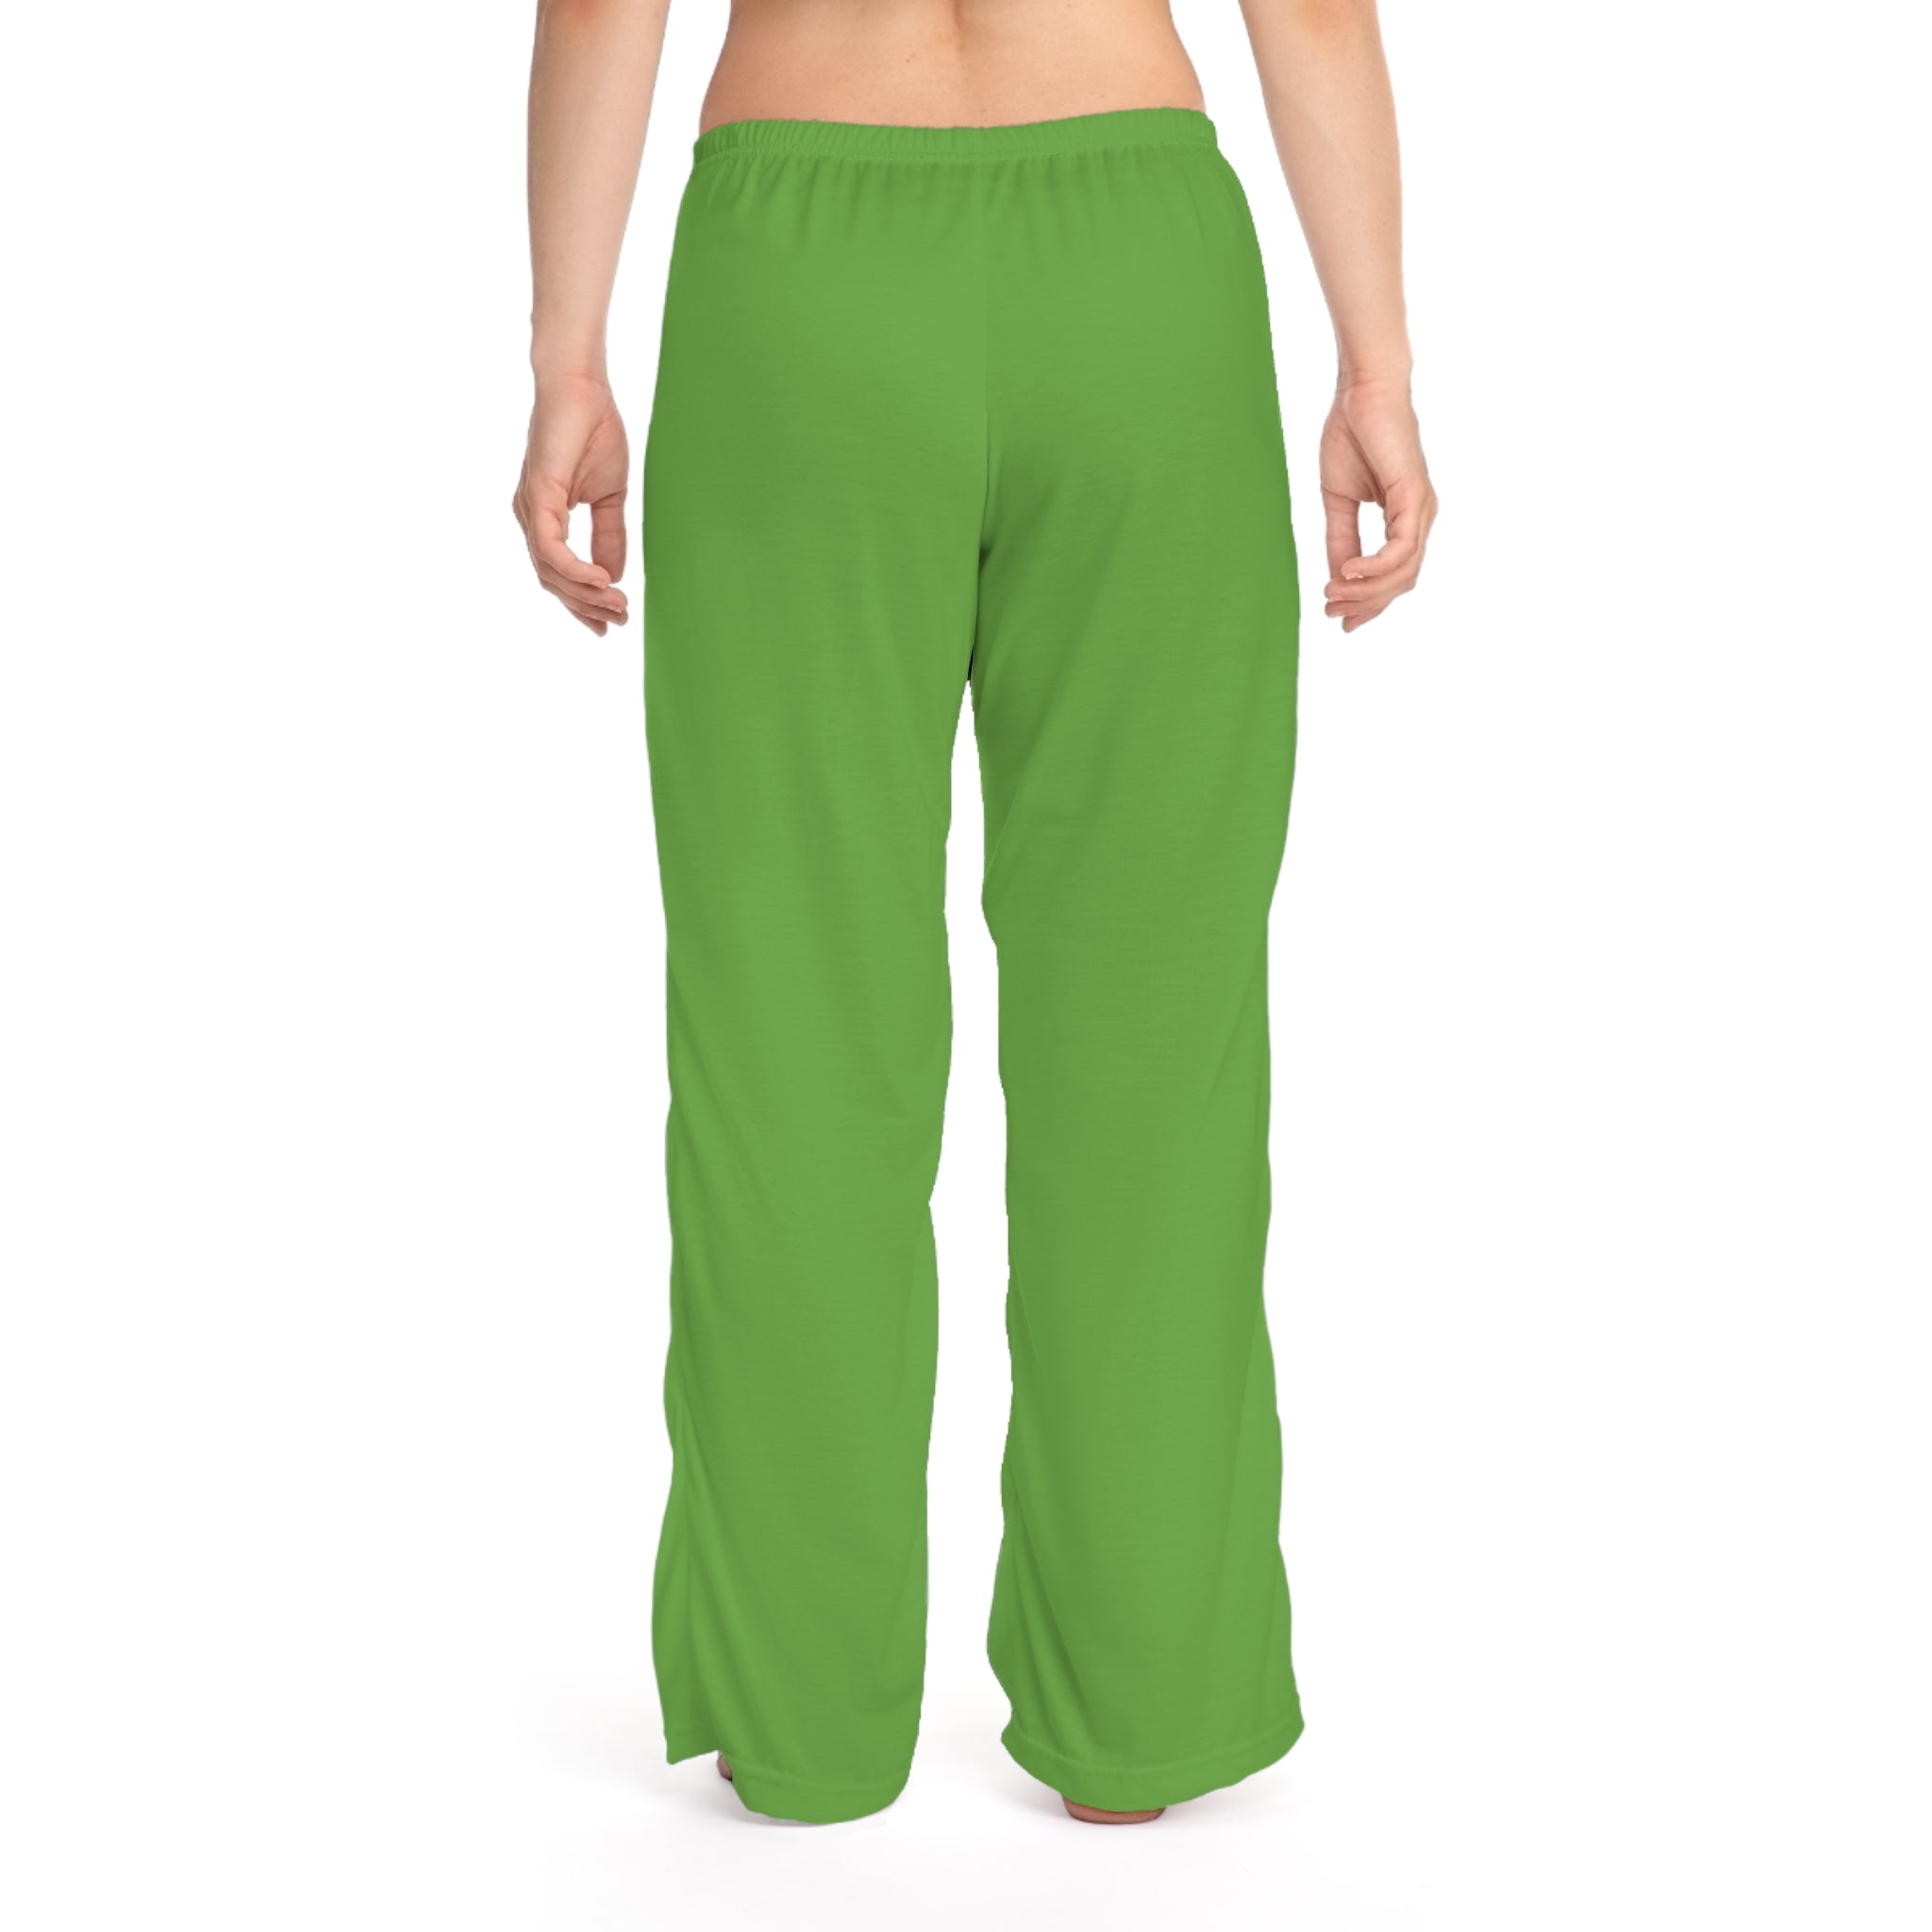 Women's Drawstring PPYQ® Pajama Pants